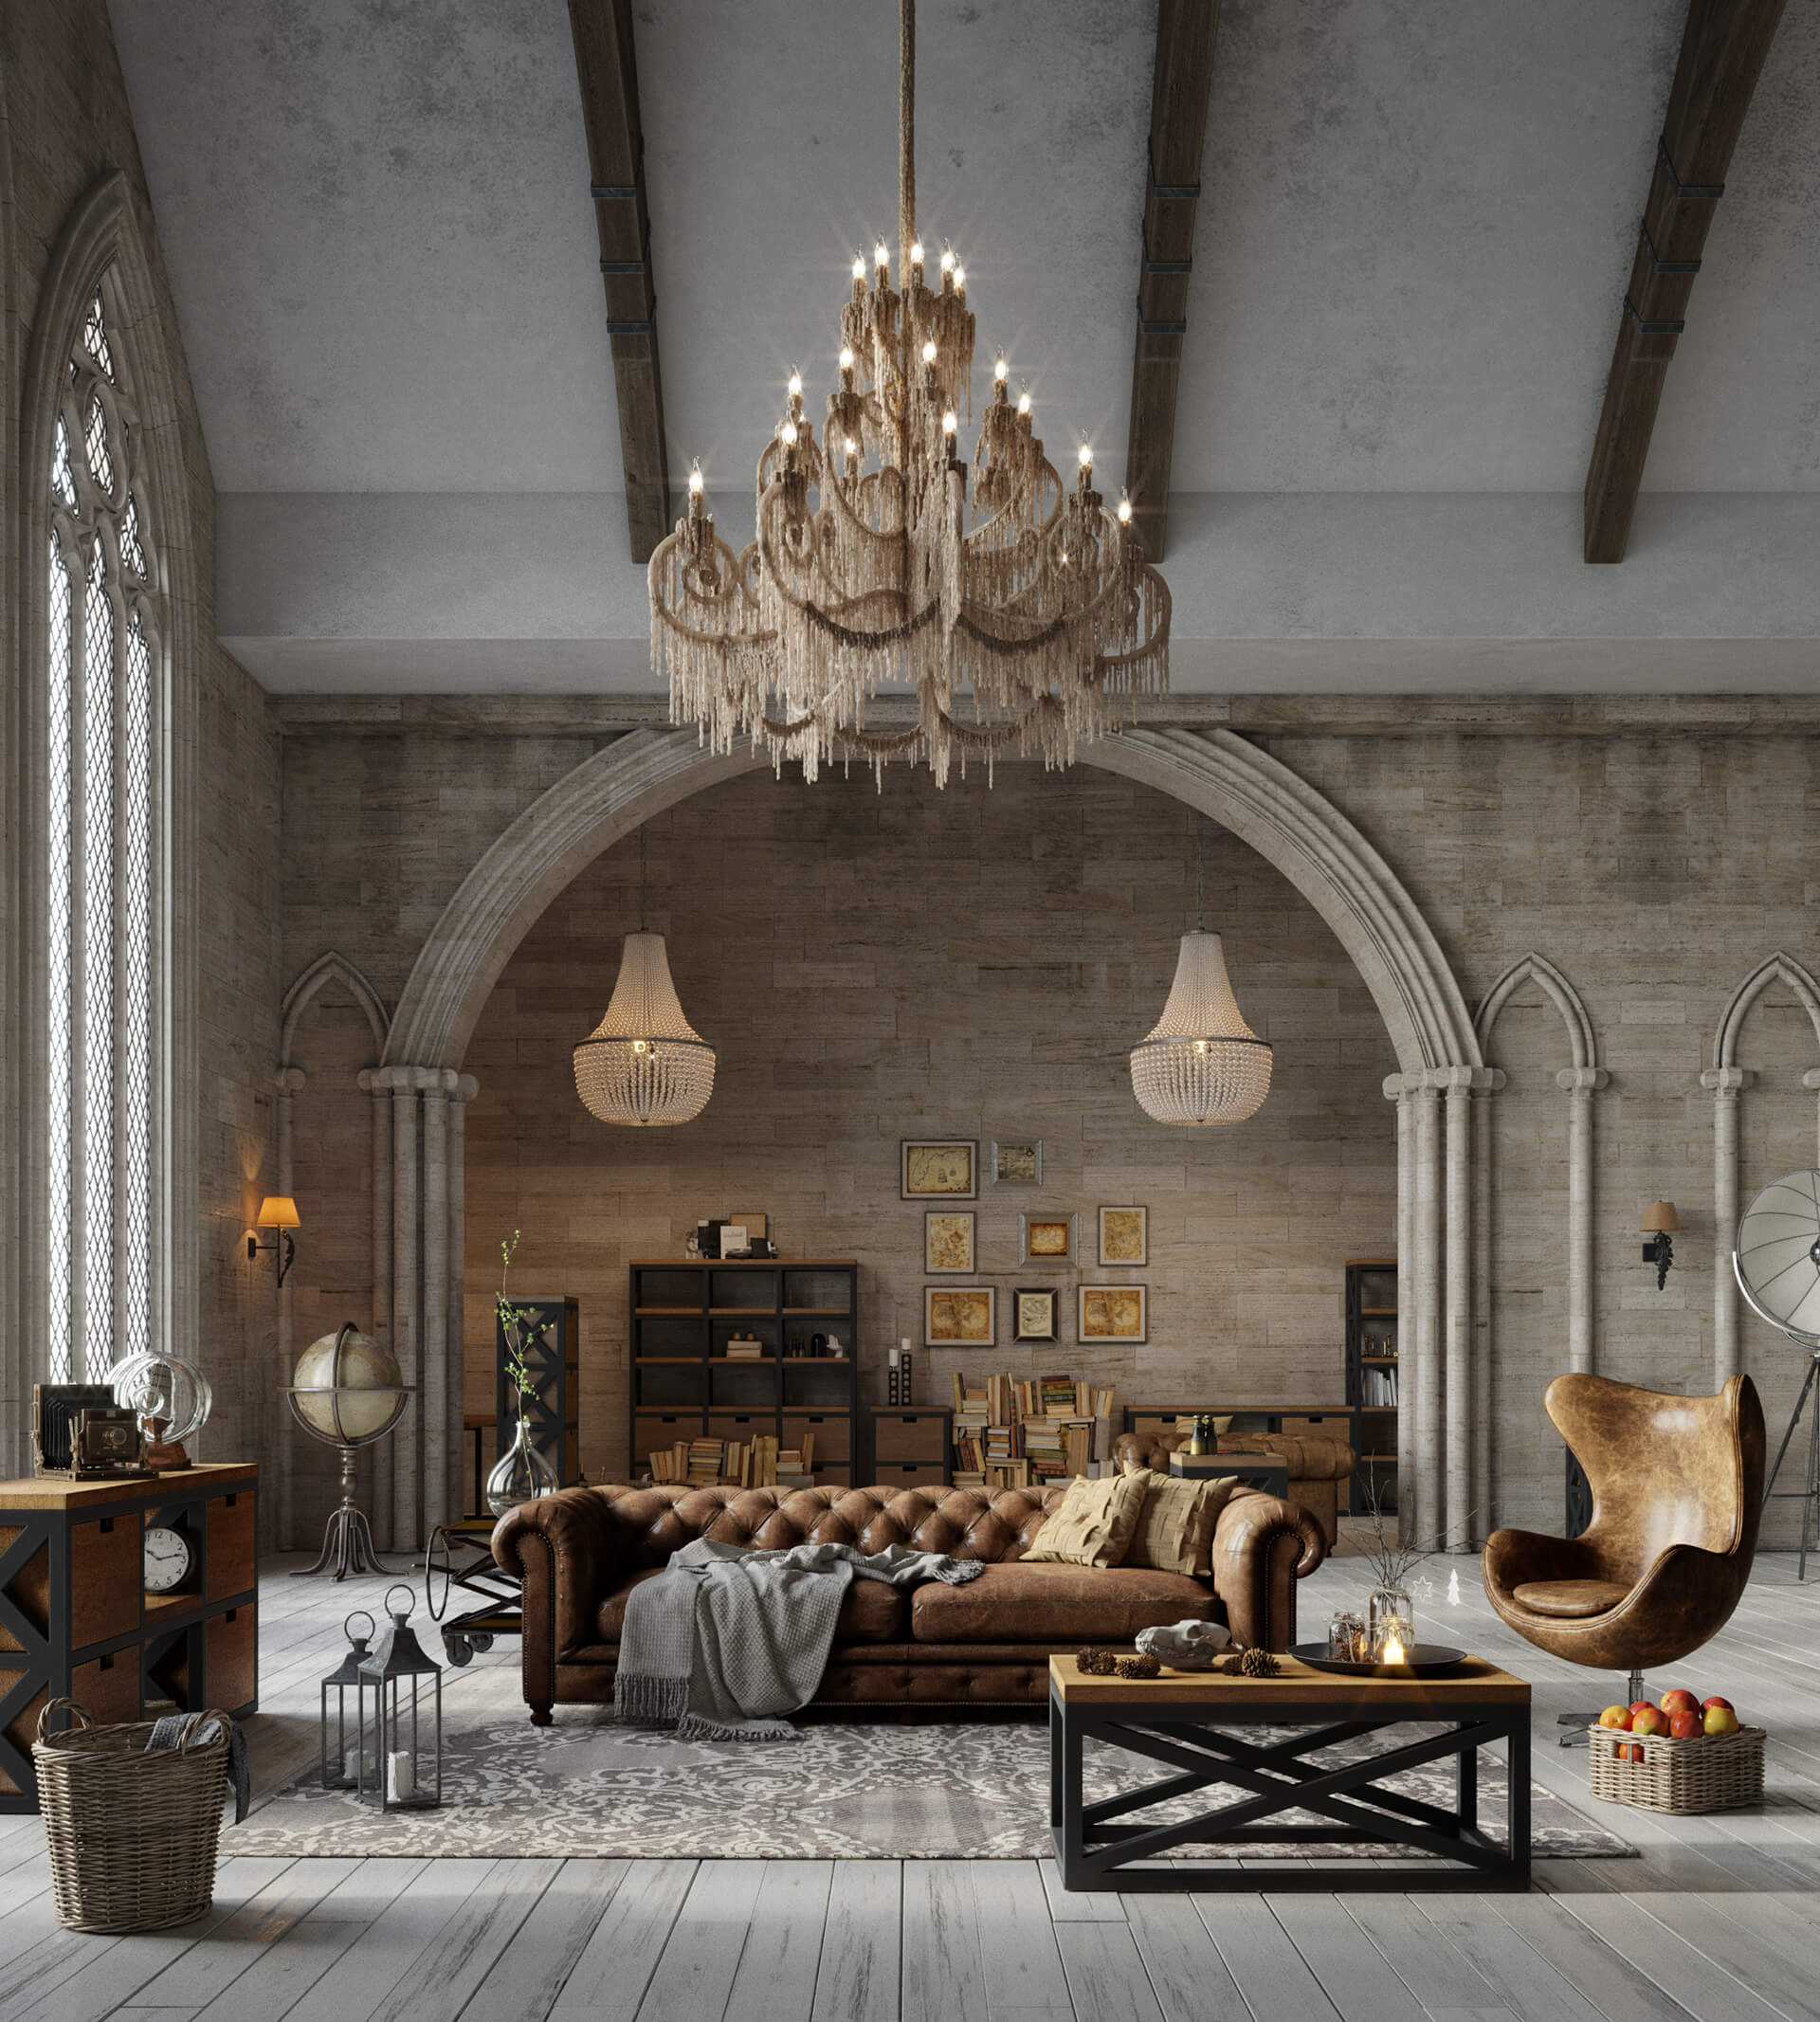 Đồ nội thất rời phong cách Công nghiệp kết hợp tường, trần, sàn Gothic